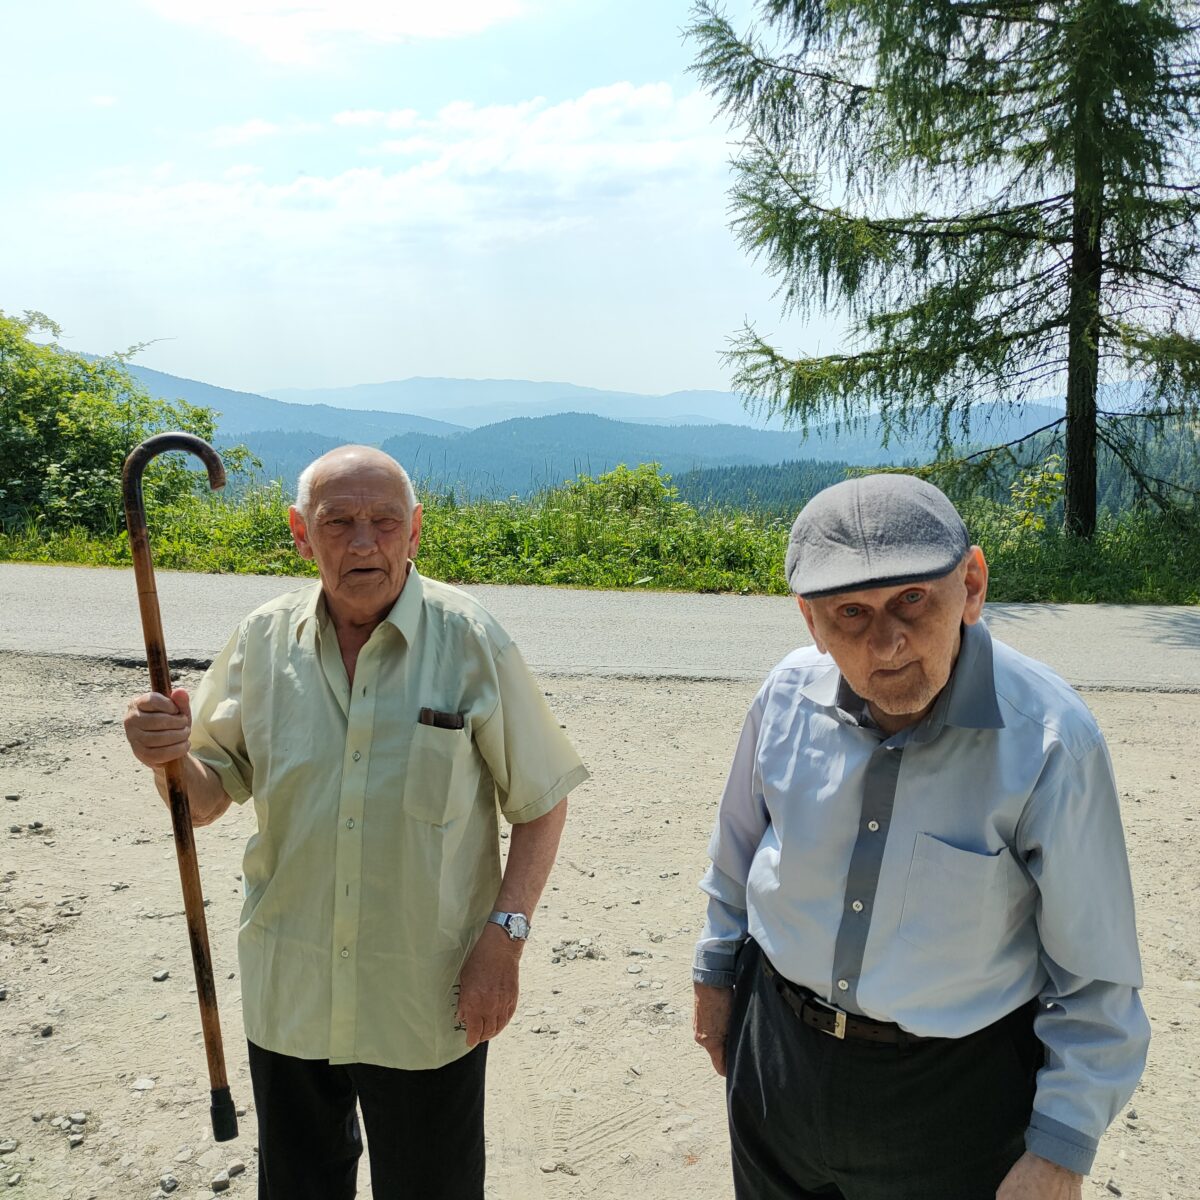 Dwóch starszych mężczyzn stoi i patrzy w obiektyw. Jeden z nich trzyma w ręku laskę, którą zaczepnie unosi w górę, drugi ma na głowie kaszkiet. W tle widać ulicę a dalej zielone krzewy i góry.